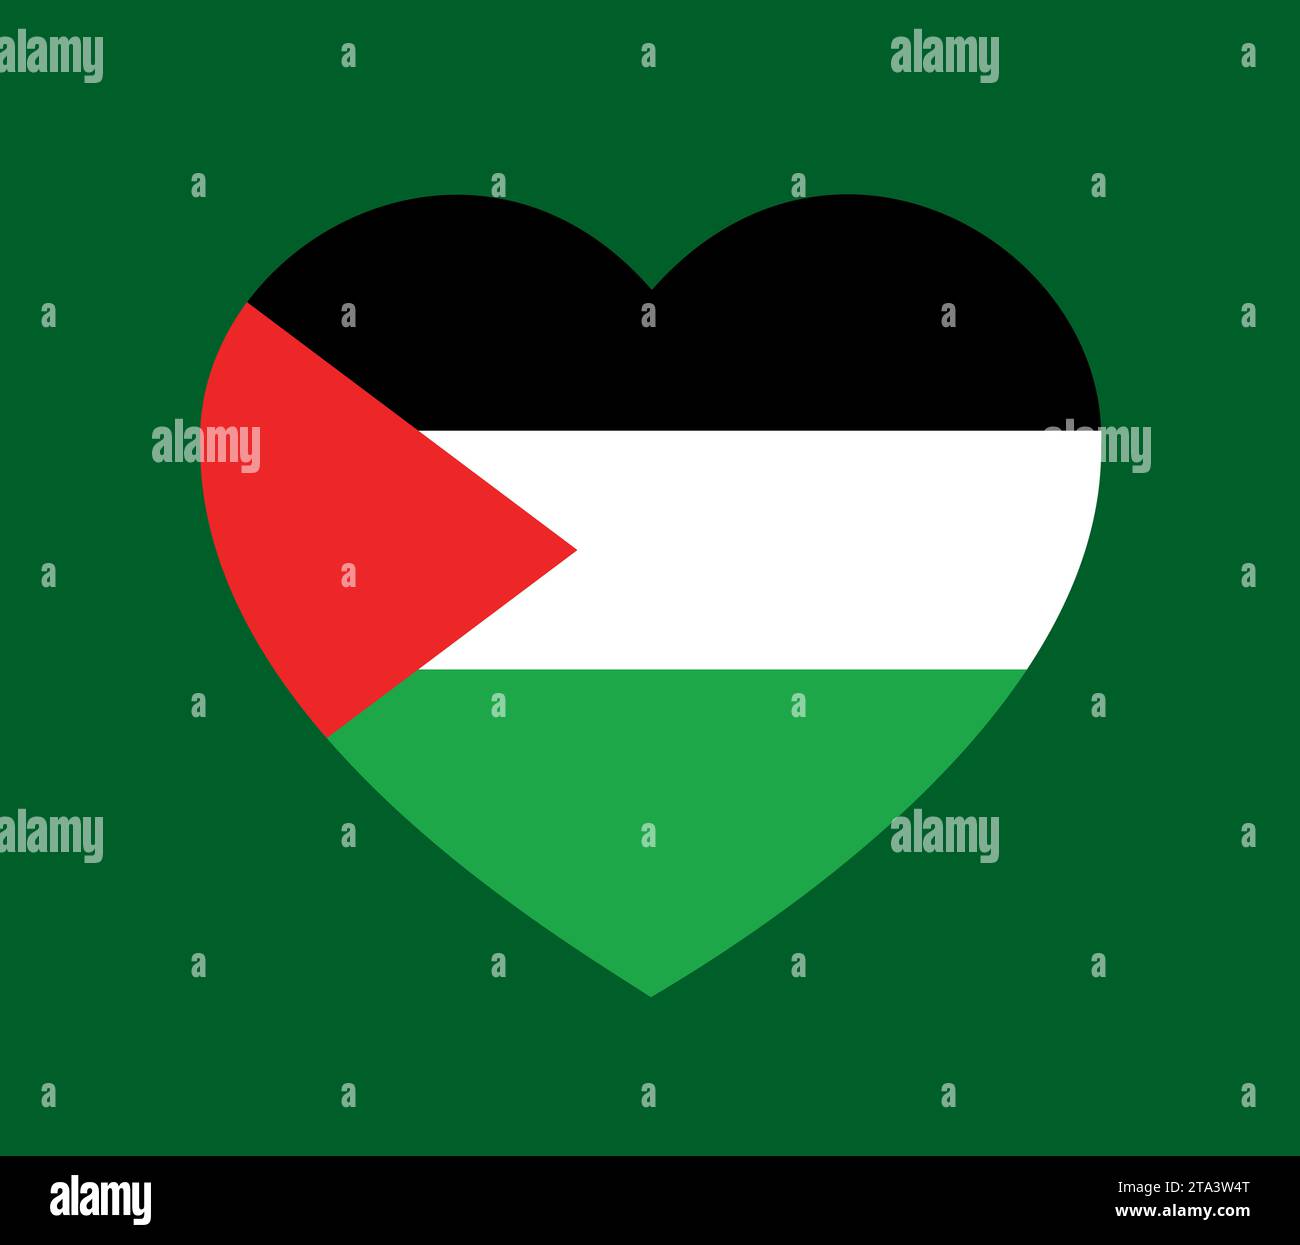 Amor corazón con la bandera nacional palestina - apoyo, simpatía y solidaridad con Palestina. Ilustración vectorial. Foto de stock